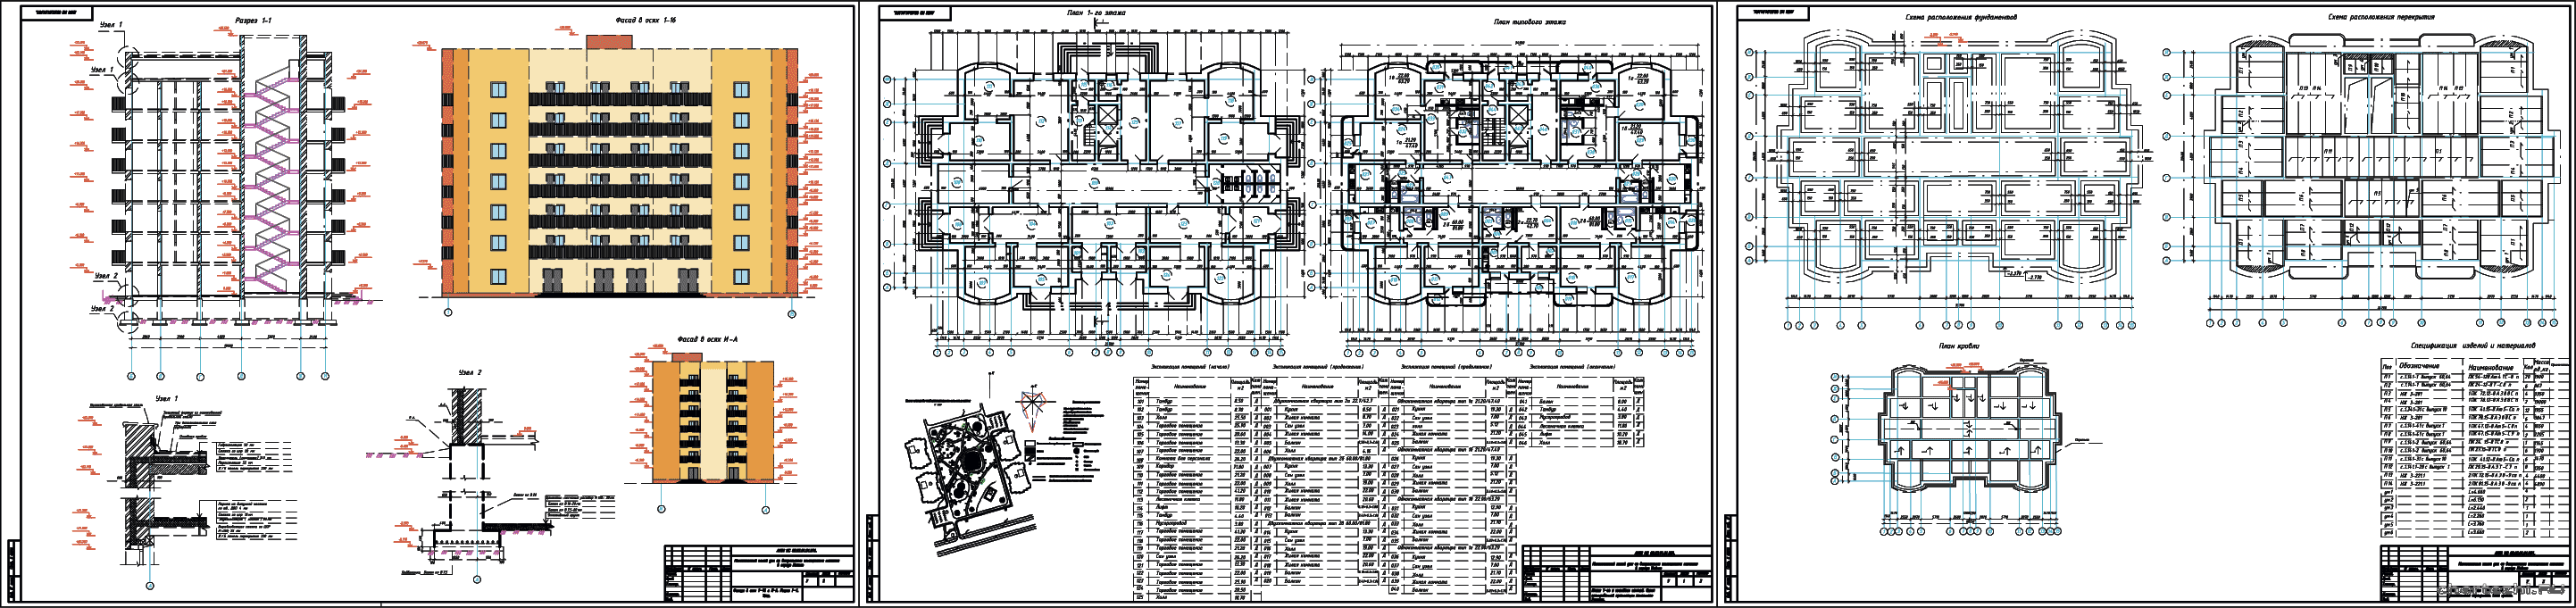 Курсовой проект - 7-ми этажный жилой дом со встроенными помещениями магазина 33,7 х 20,4 м в г. Майкоп